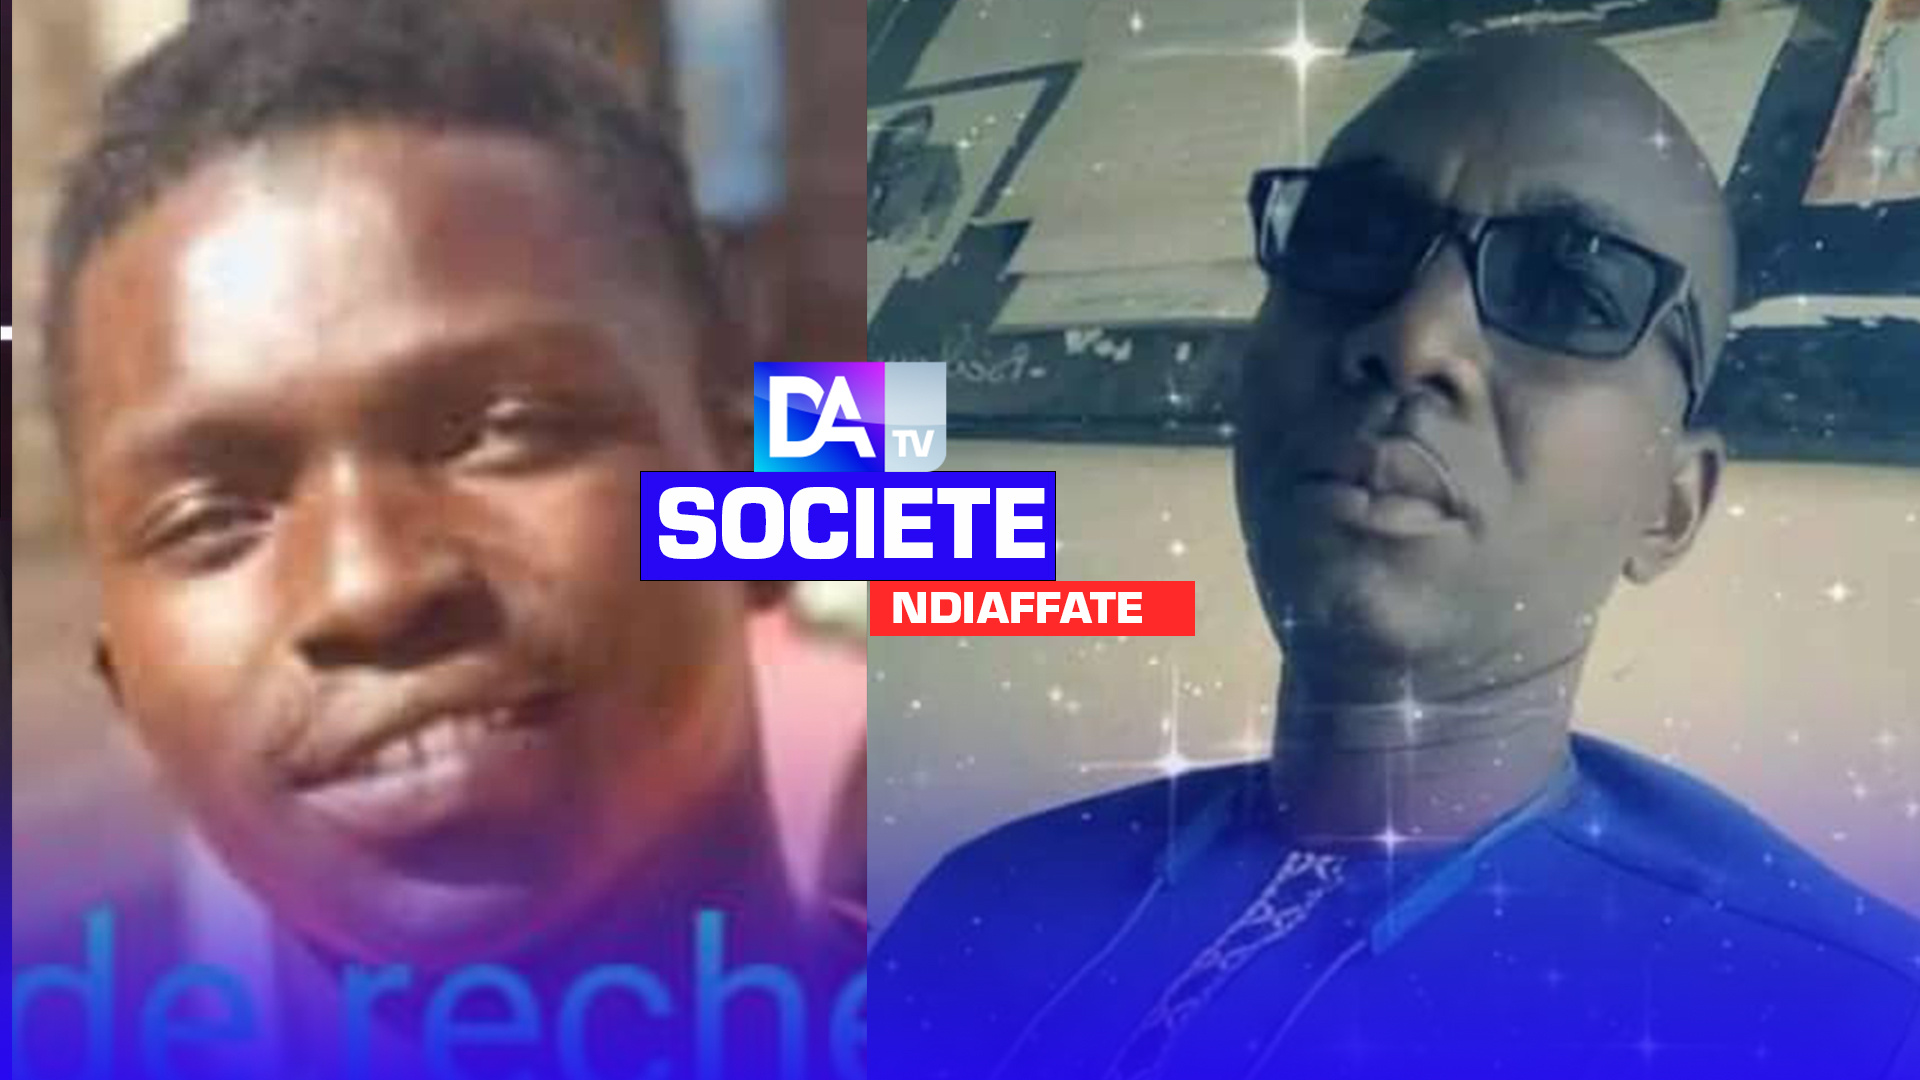 Ndiaffate : Le présumé meurtrier arrêté par la gendarmerie, selon le père de la victime.